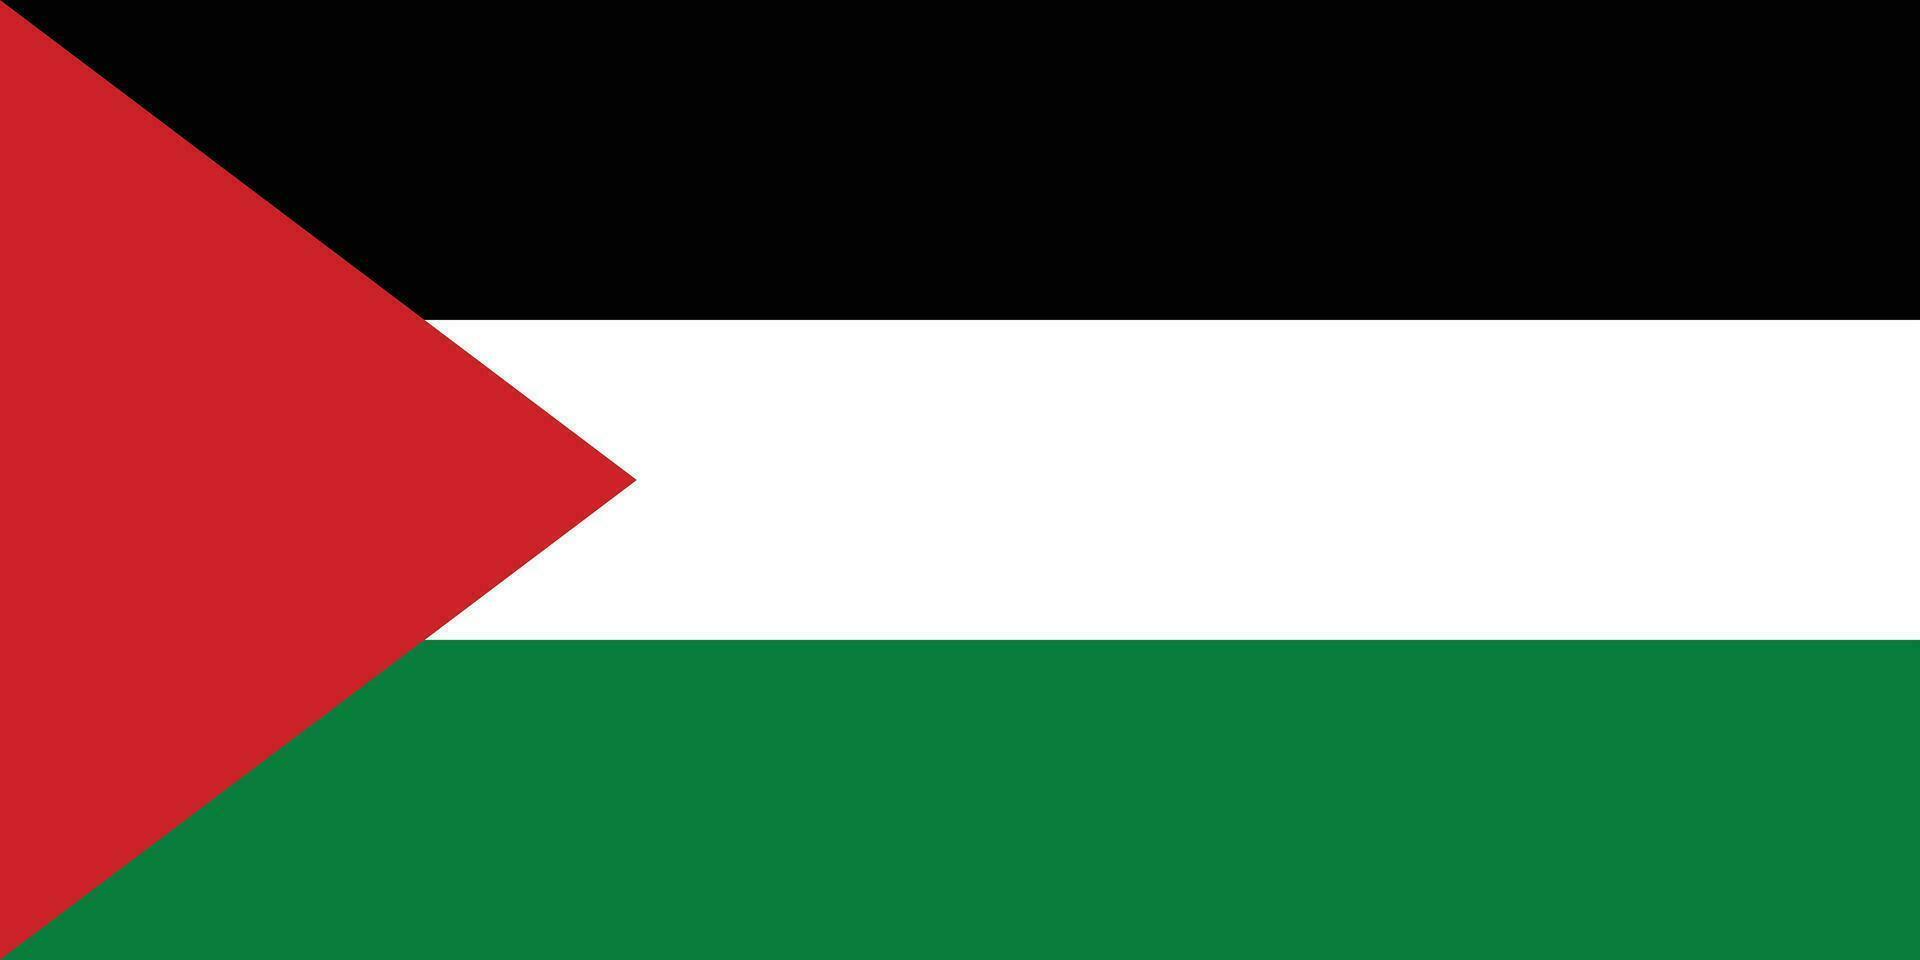 Palestine drapeau, nationale drapeau de Palestine vecteur illustration.